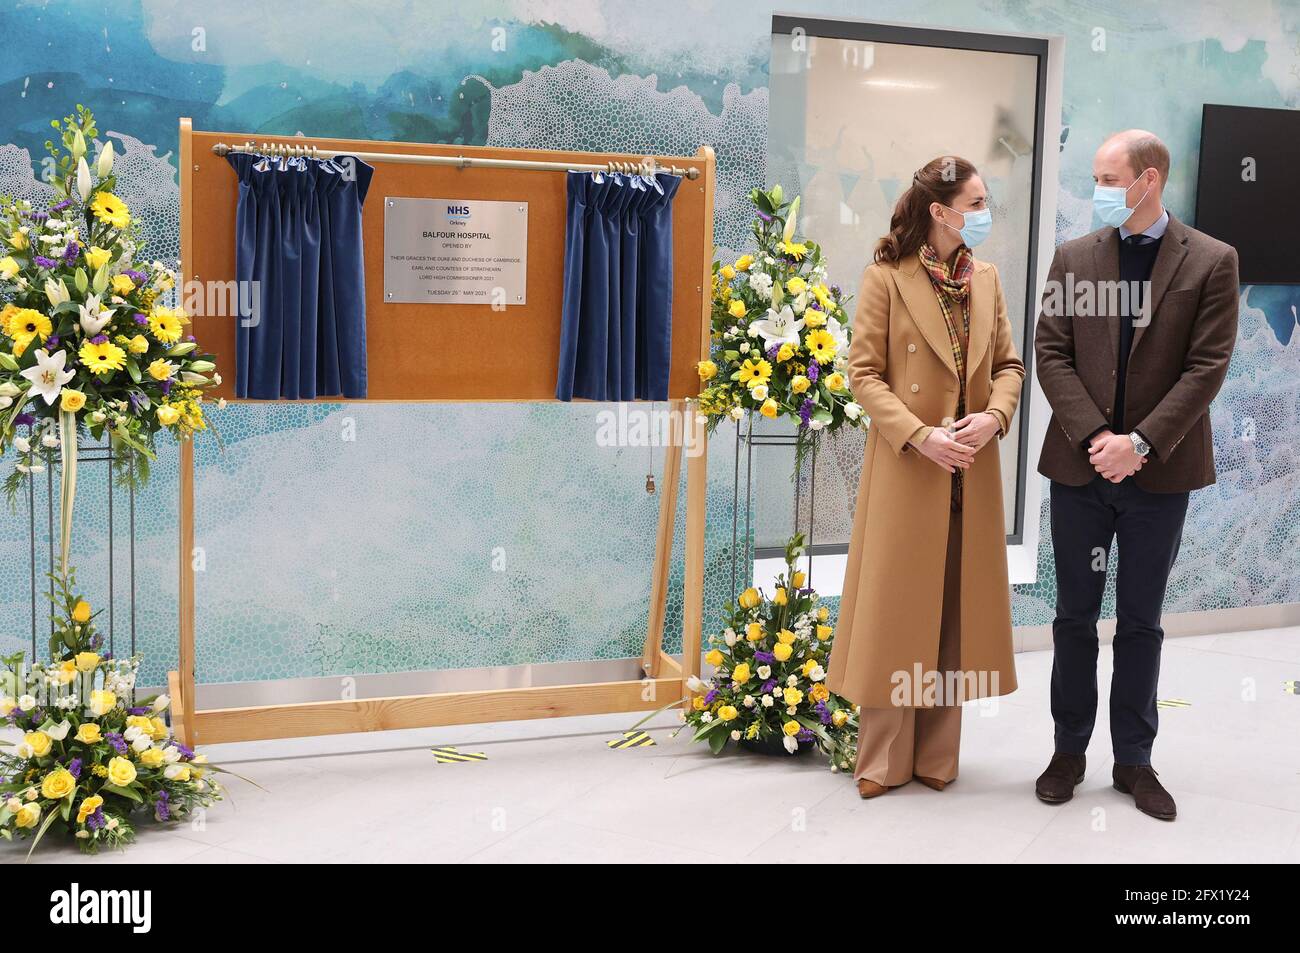 Der Herzog und die Herzogin von Cambridge während der offiziellen Eröffnung des Balfour, Orkneys neues Krankenhaus in Kirkwall, wo sie mit Mitarbeitern des Gesundheitsdienstes zusammentreffen, während sie ihre Reise durch Schottland fortsetzen. Bilddatum: Dienstag, 25. Mai 2021. Stockfoto